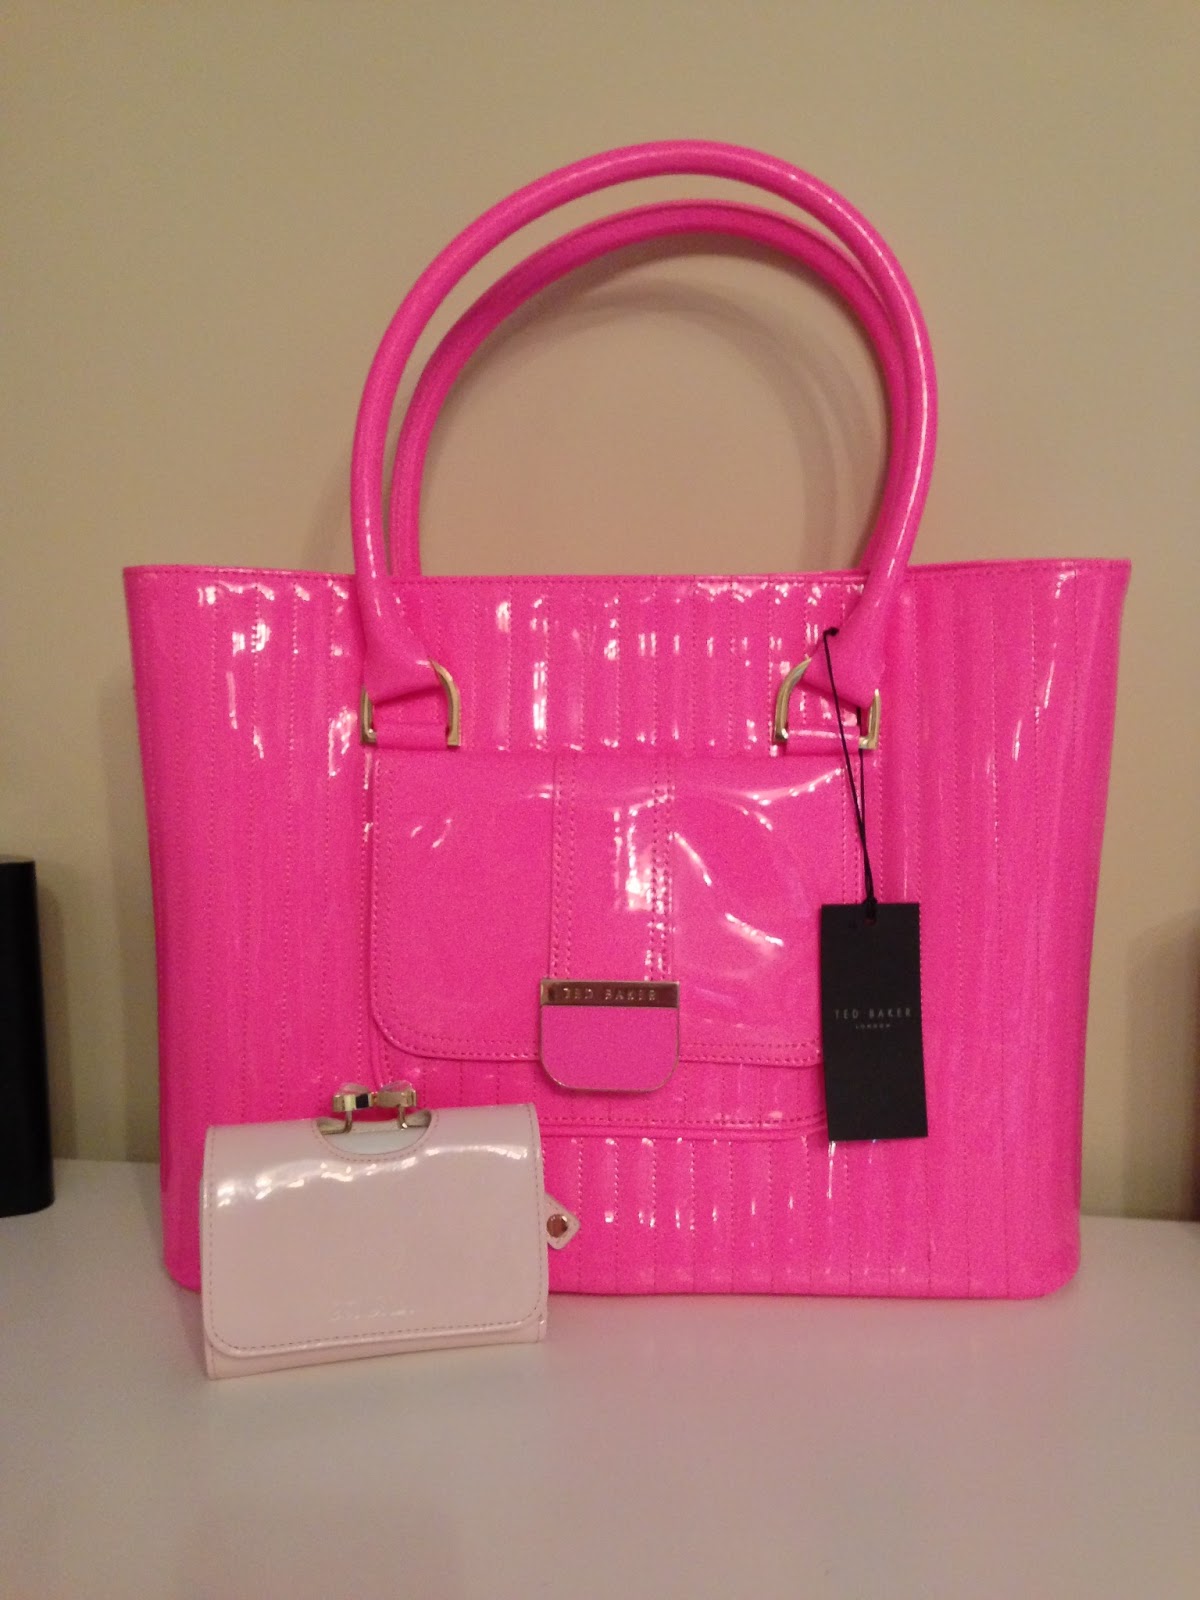 Bright Pink Handbag